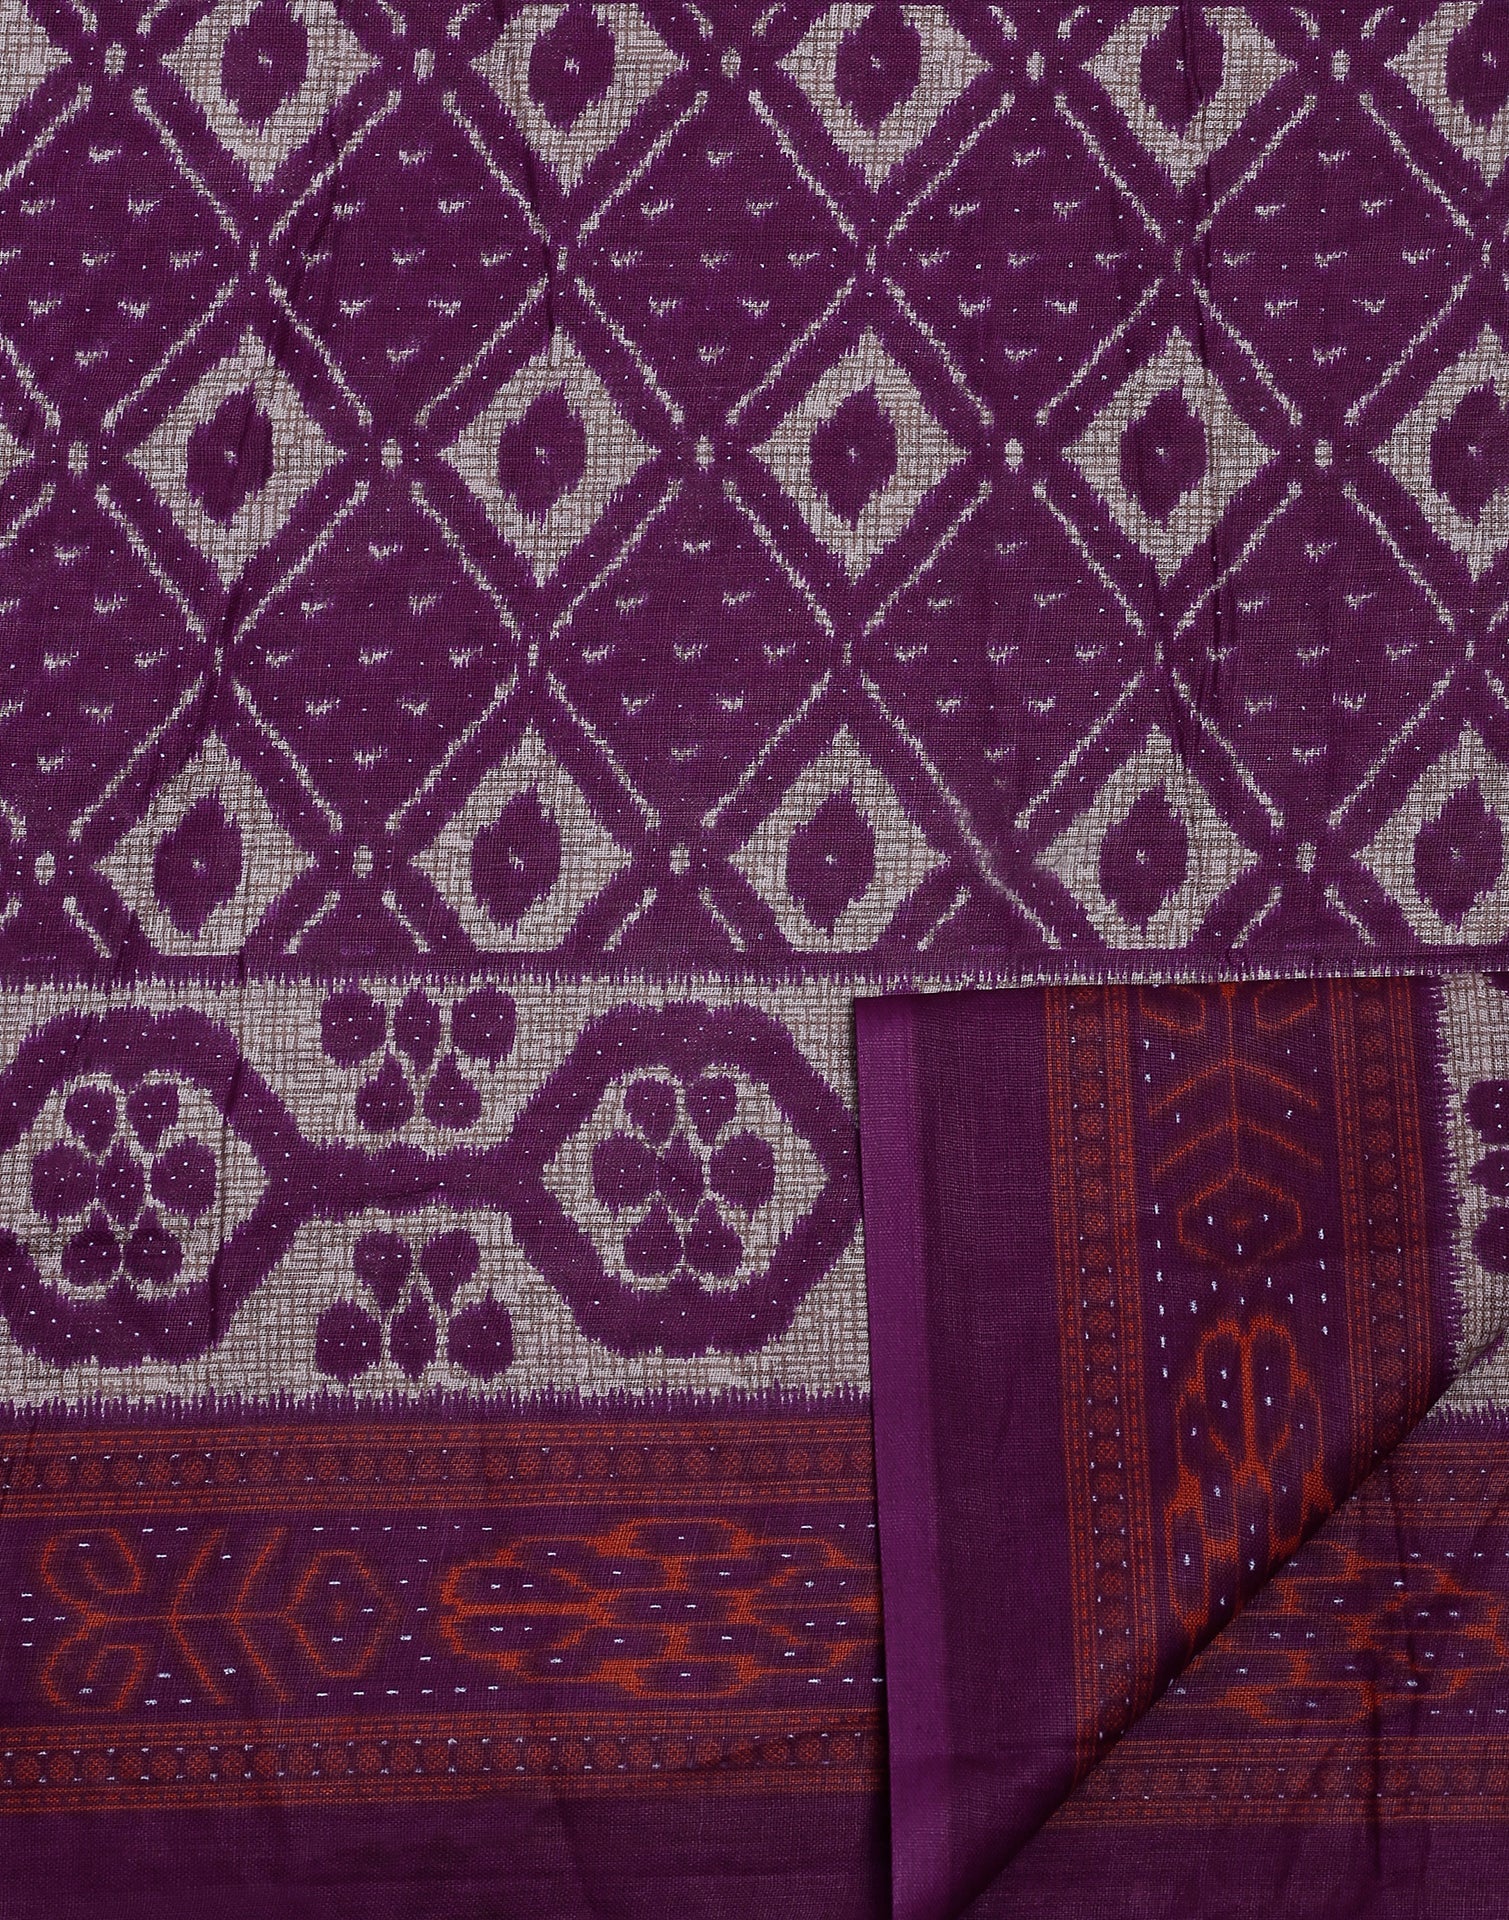 Purple Printed Cotton Saree | Sudathi